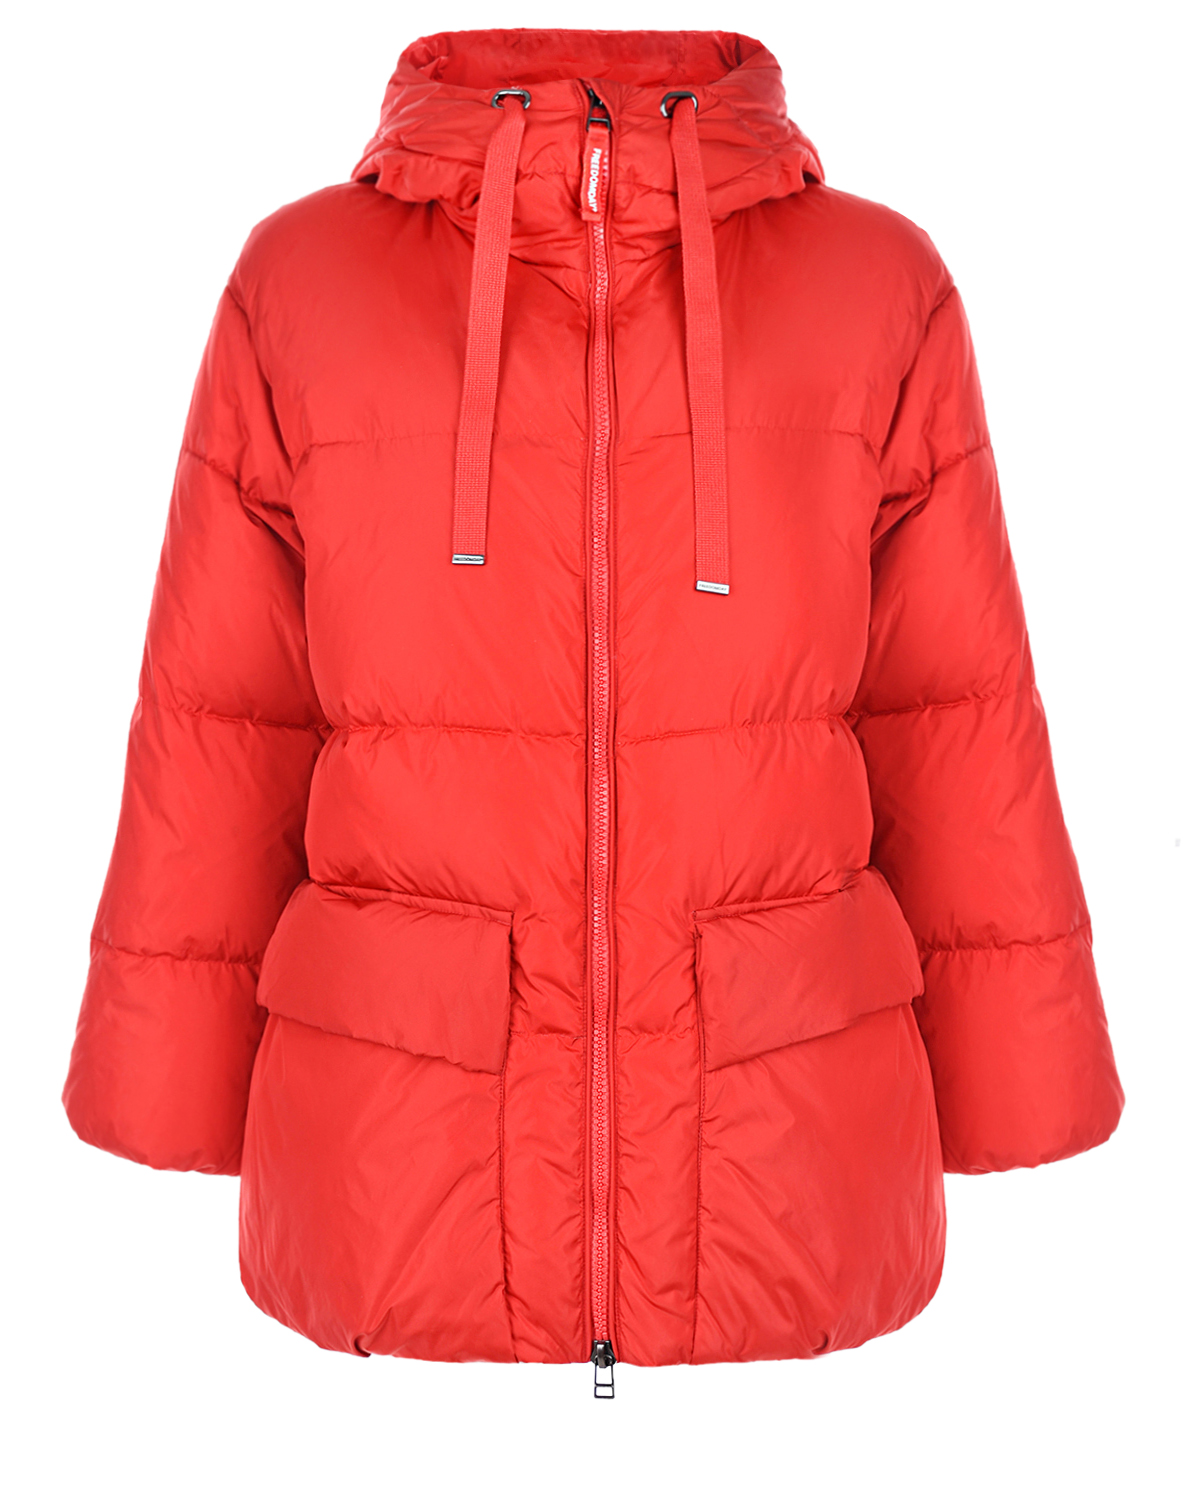 Красная куртка с контрастной подкладкой Freedomday, размер 38, цвет красный - фото 1